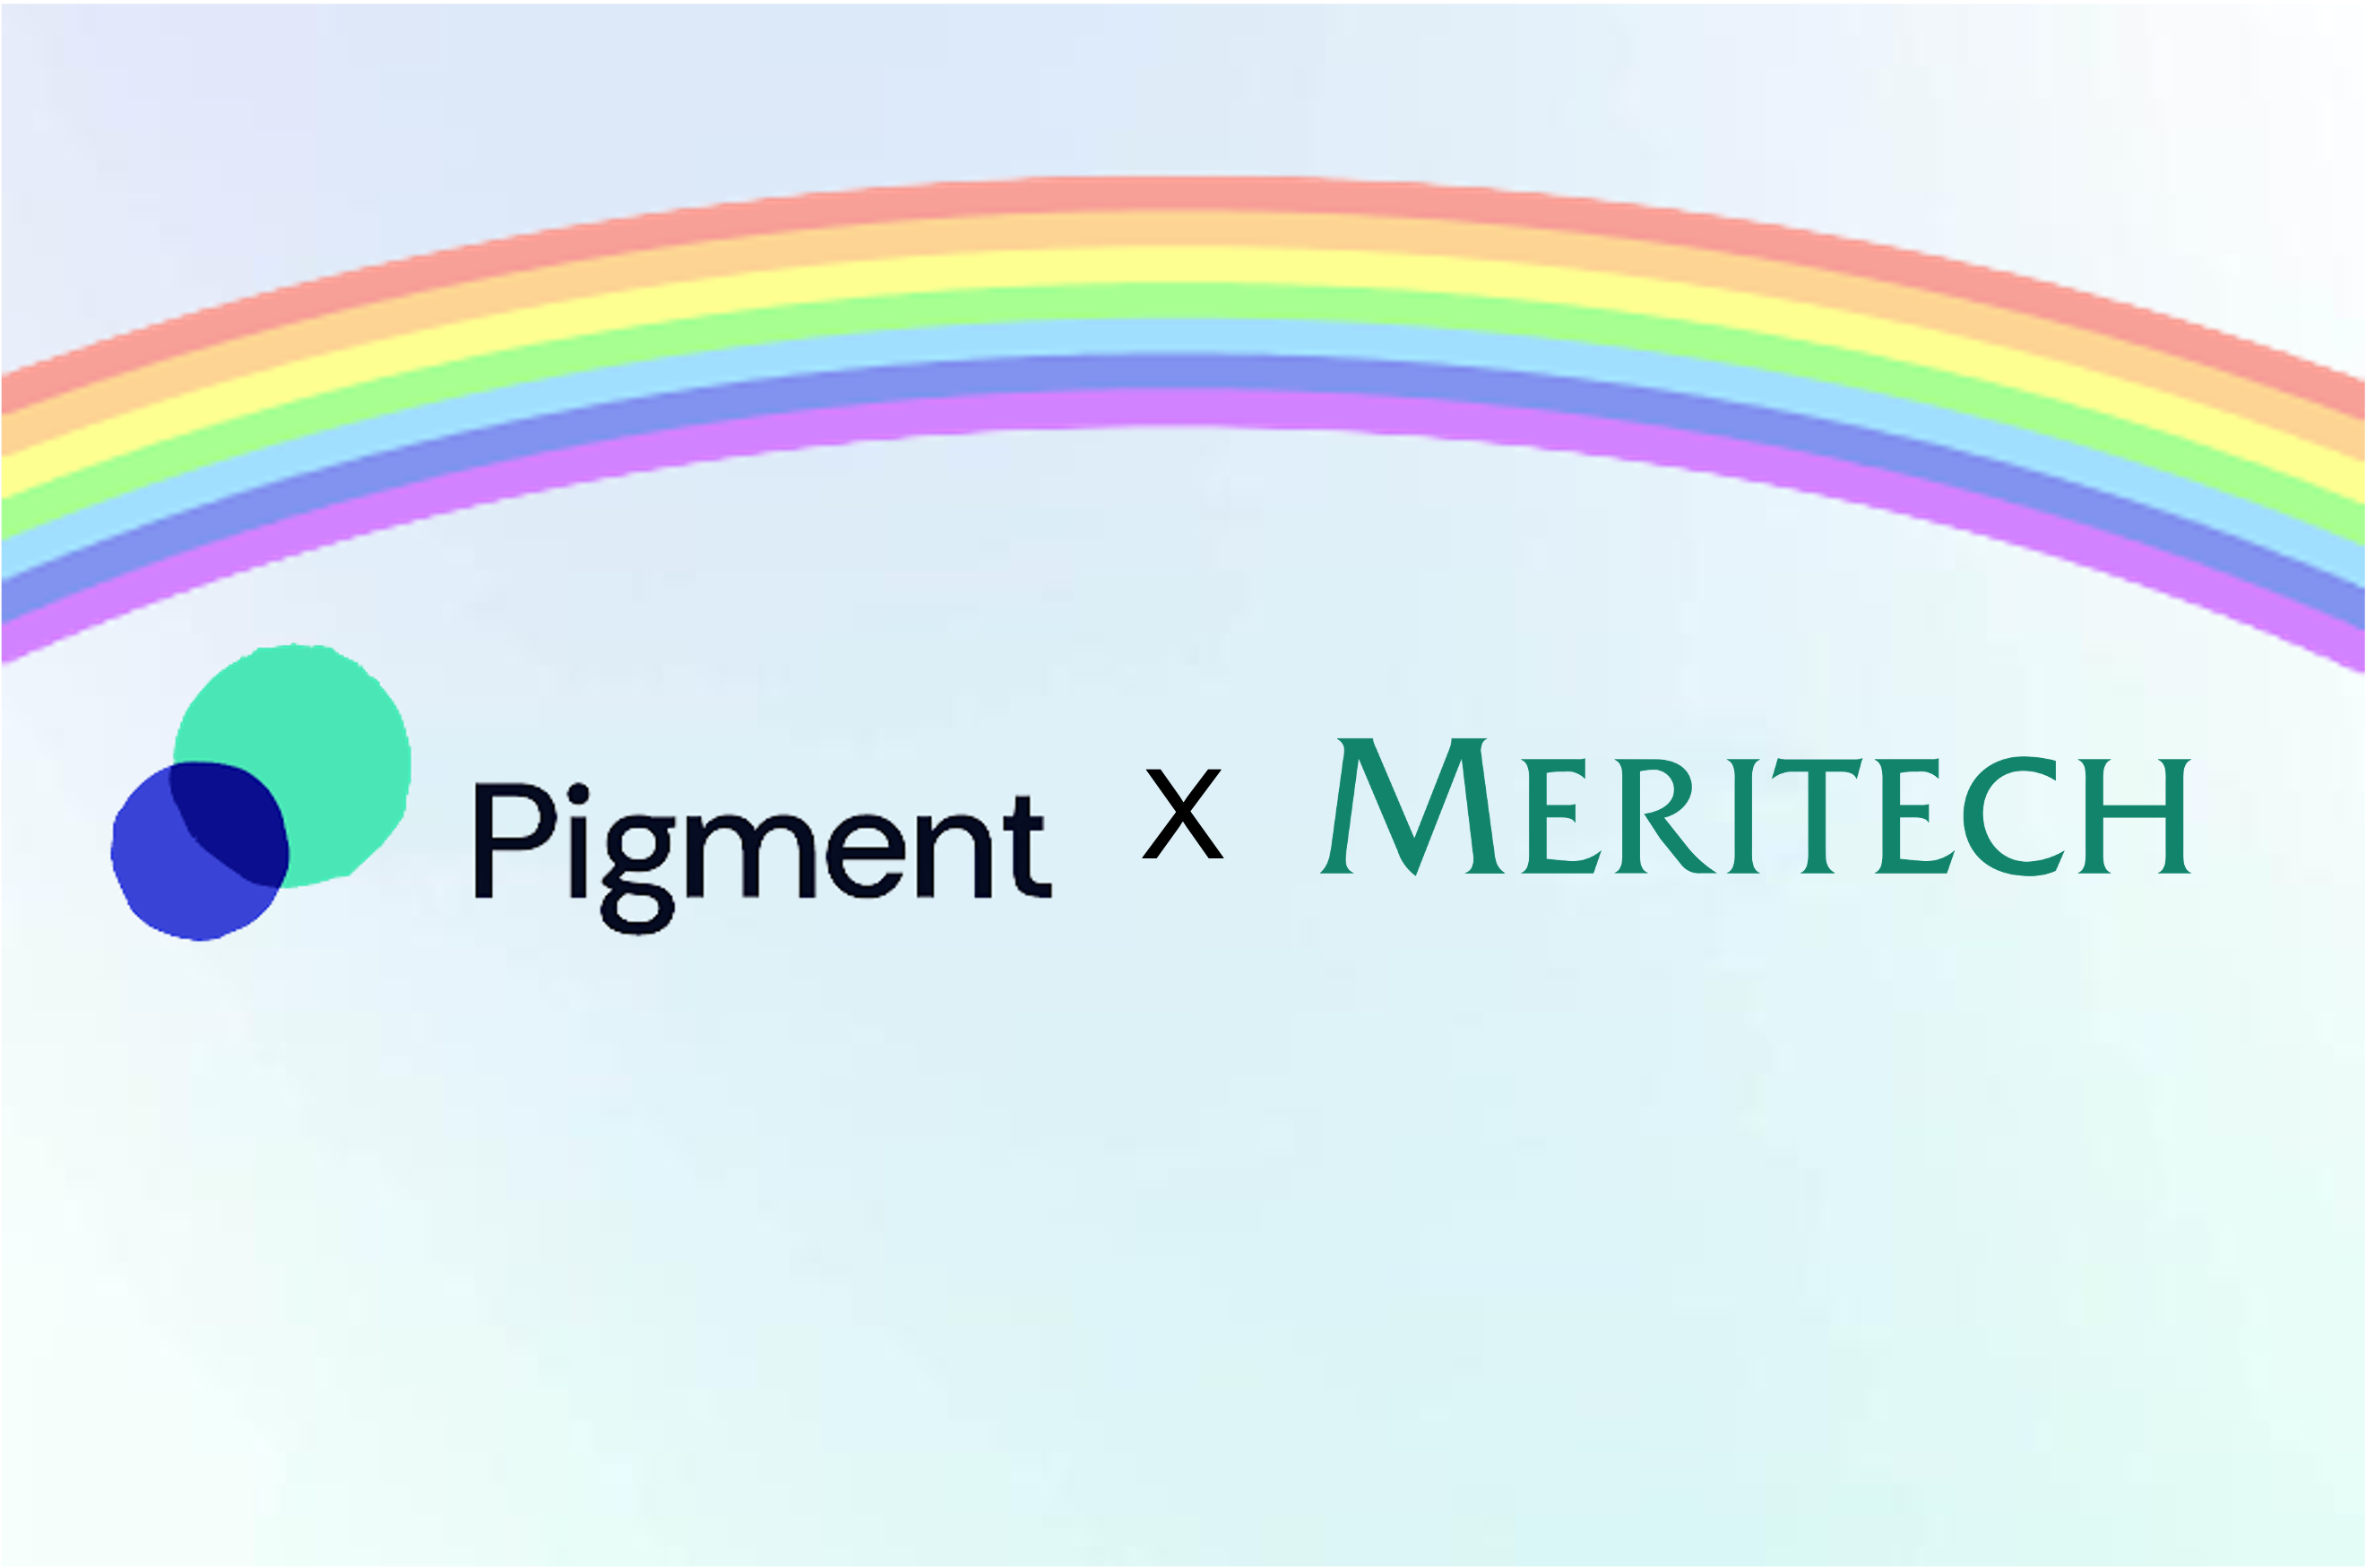 Pigment_x_meritech_rainbow